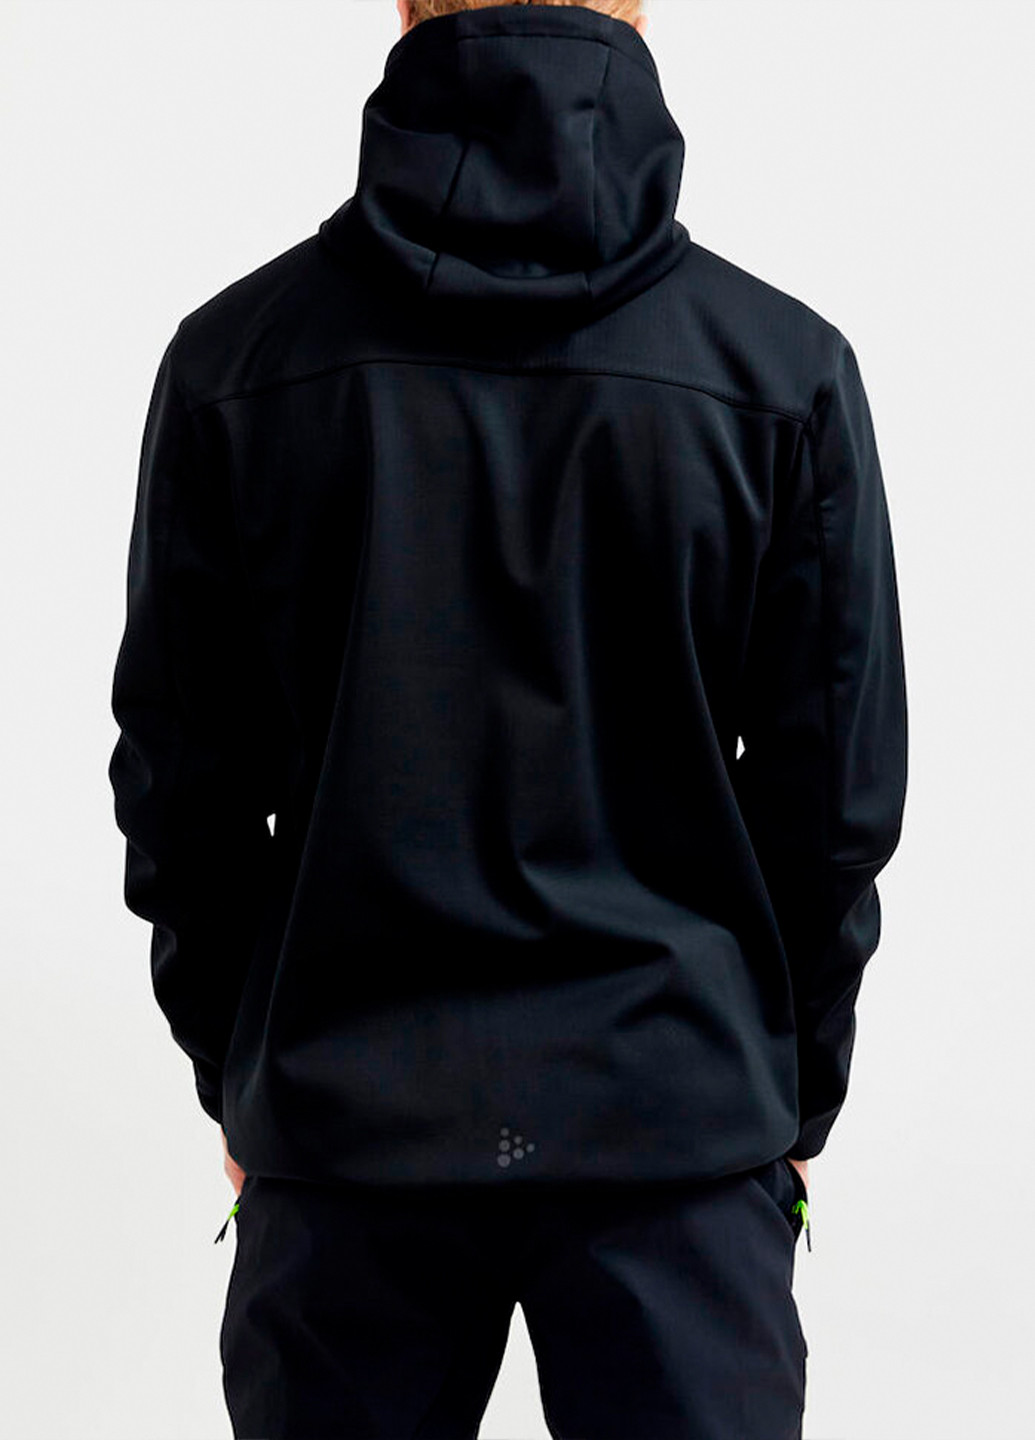 Черная демисезонная мужская куртка Craft Shell Jacket